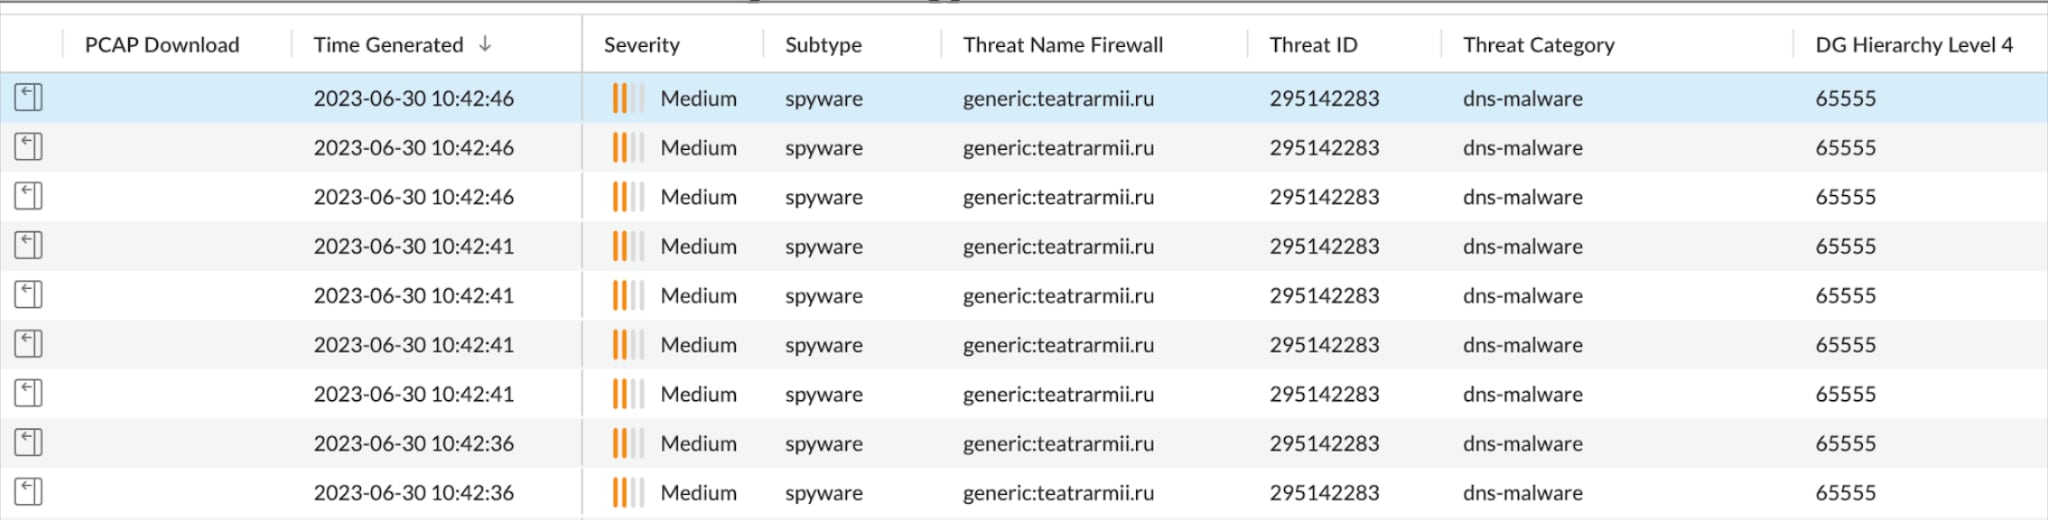 図9. Prisma AccessでActivityのLog Viewerを表示したところ。Firewall/Threatで不審なドメインをspywareとして検出している